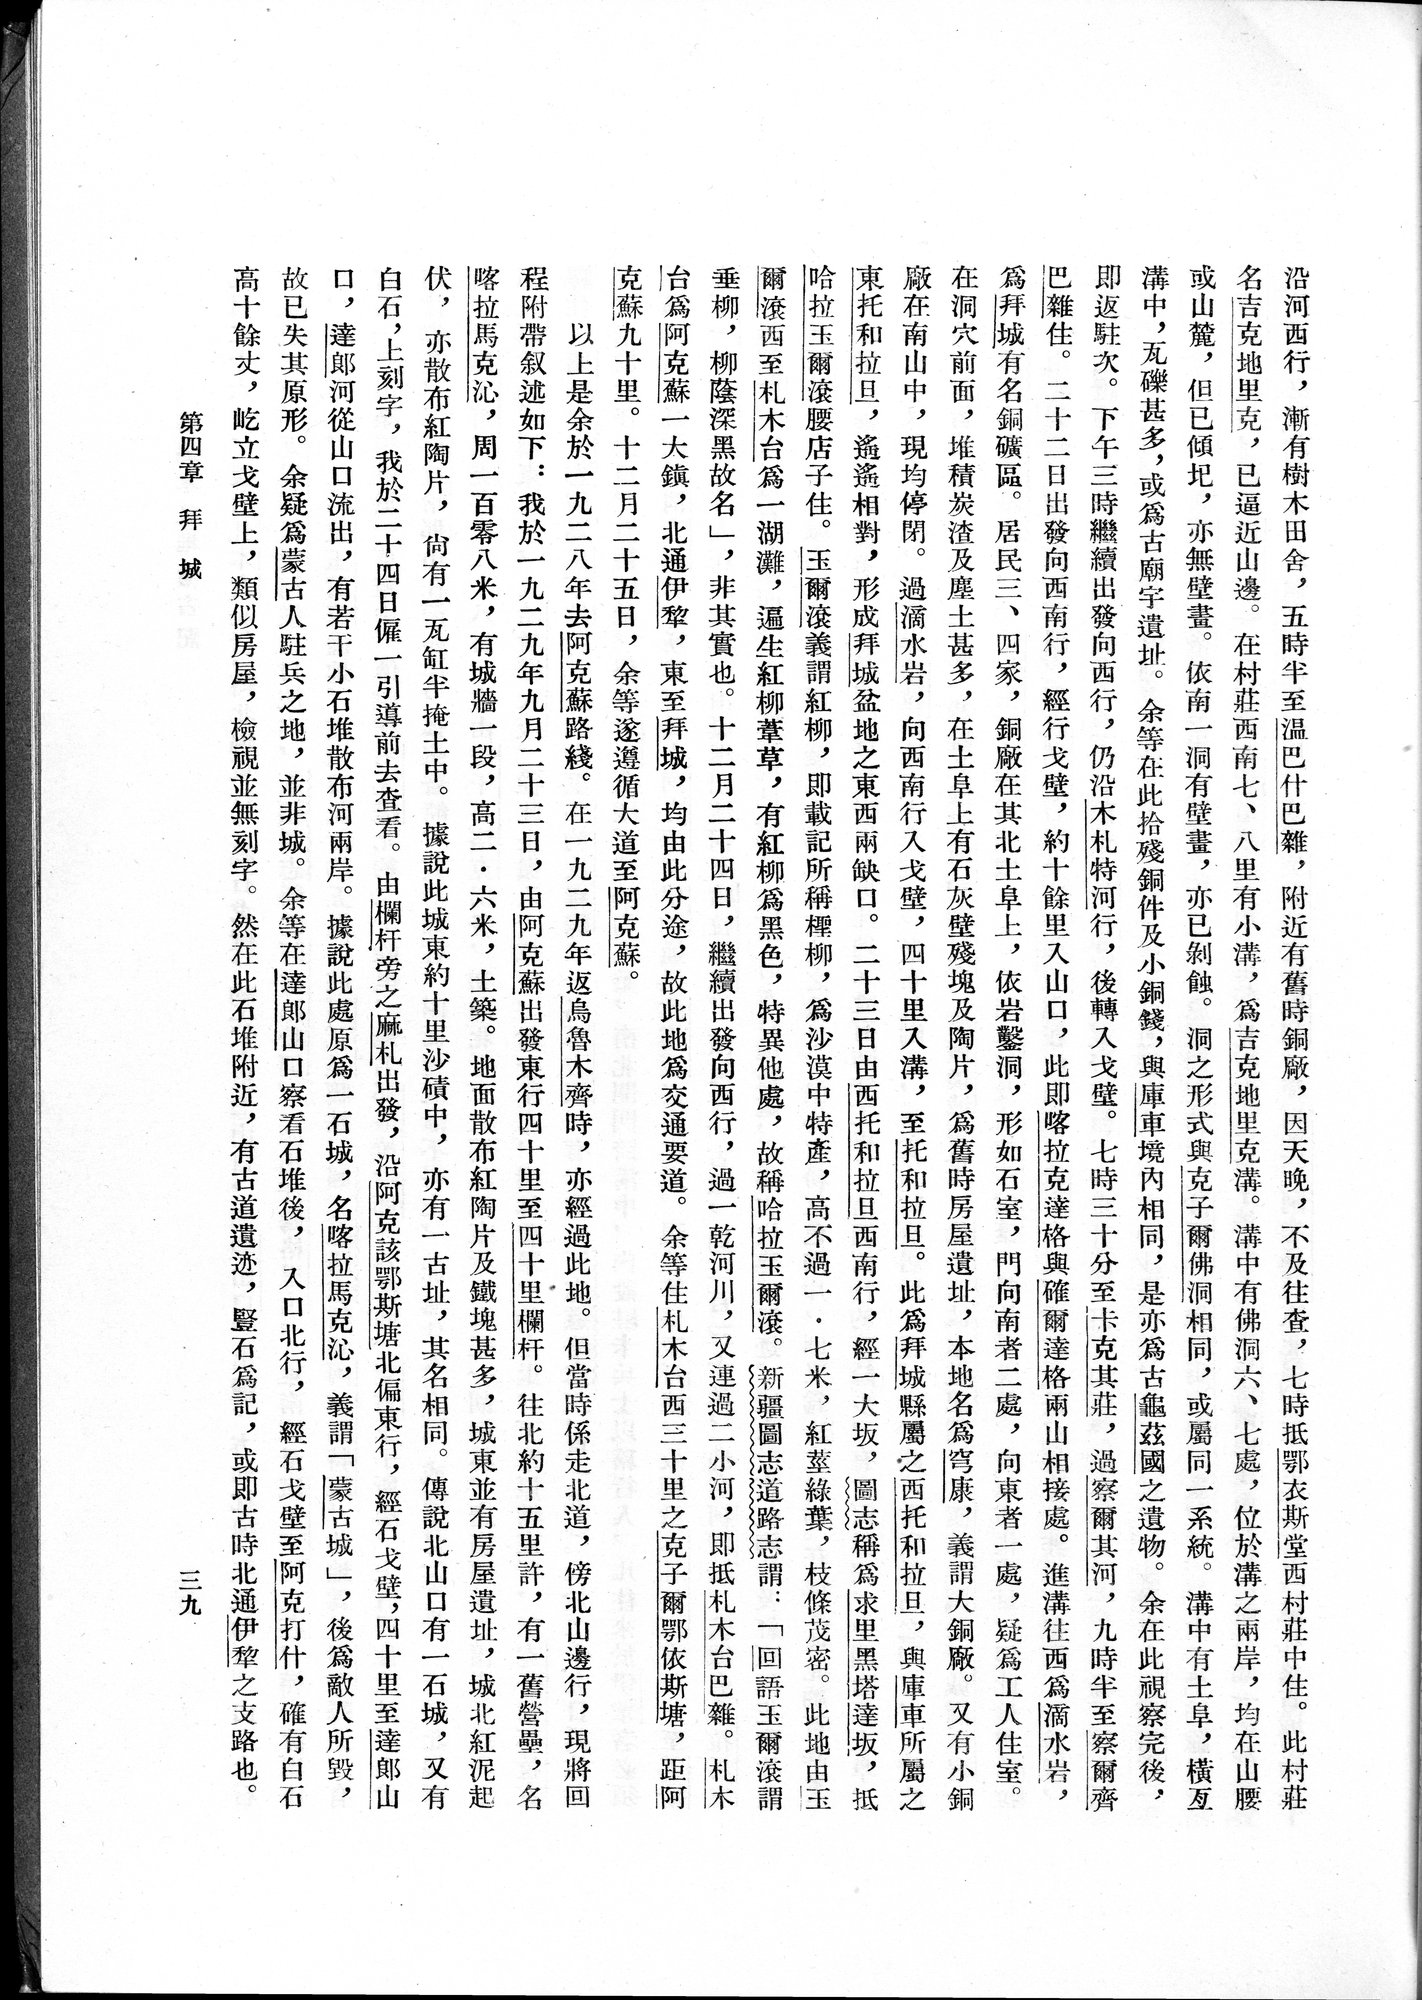 塔里木盆地考古記 : vol.1 / Page 63 (Grayscale High Resolution Image)